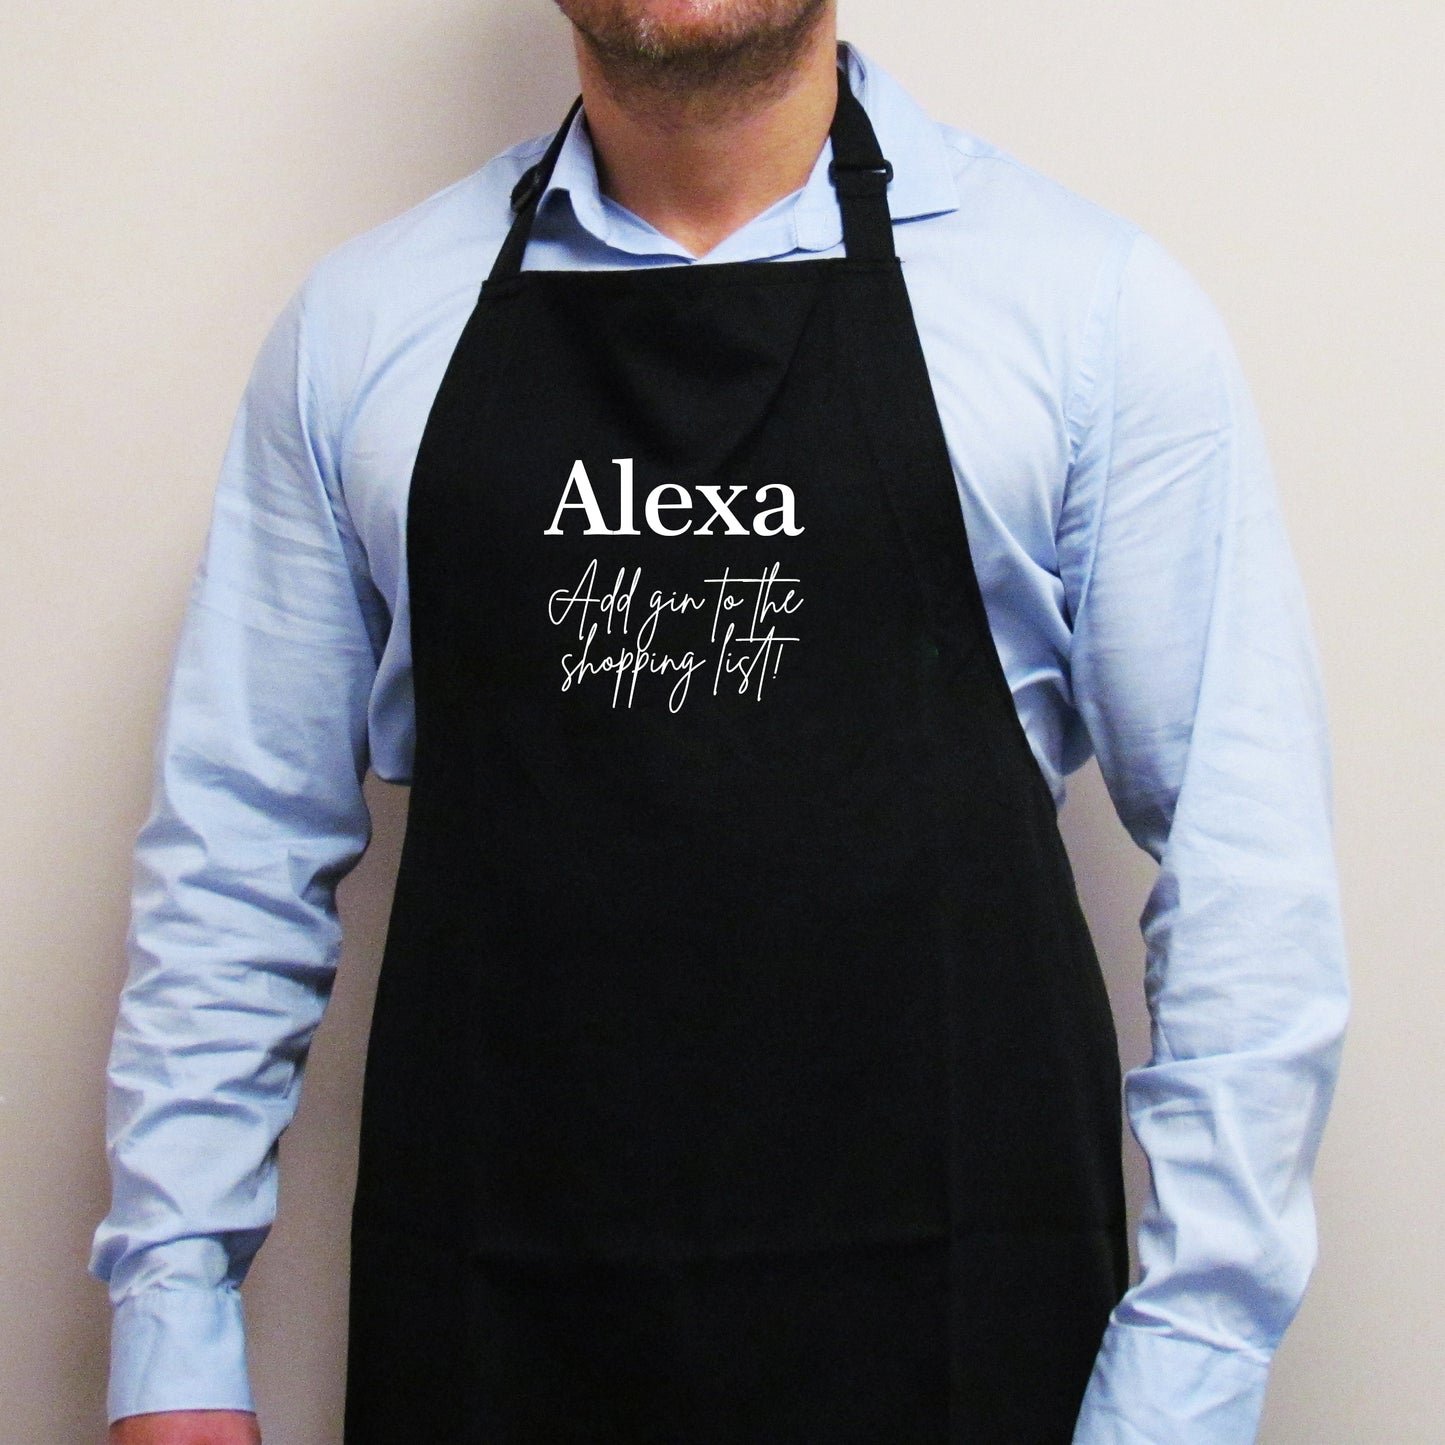 Alexa add gin funny apron